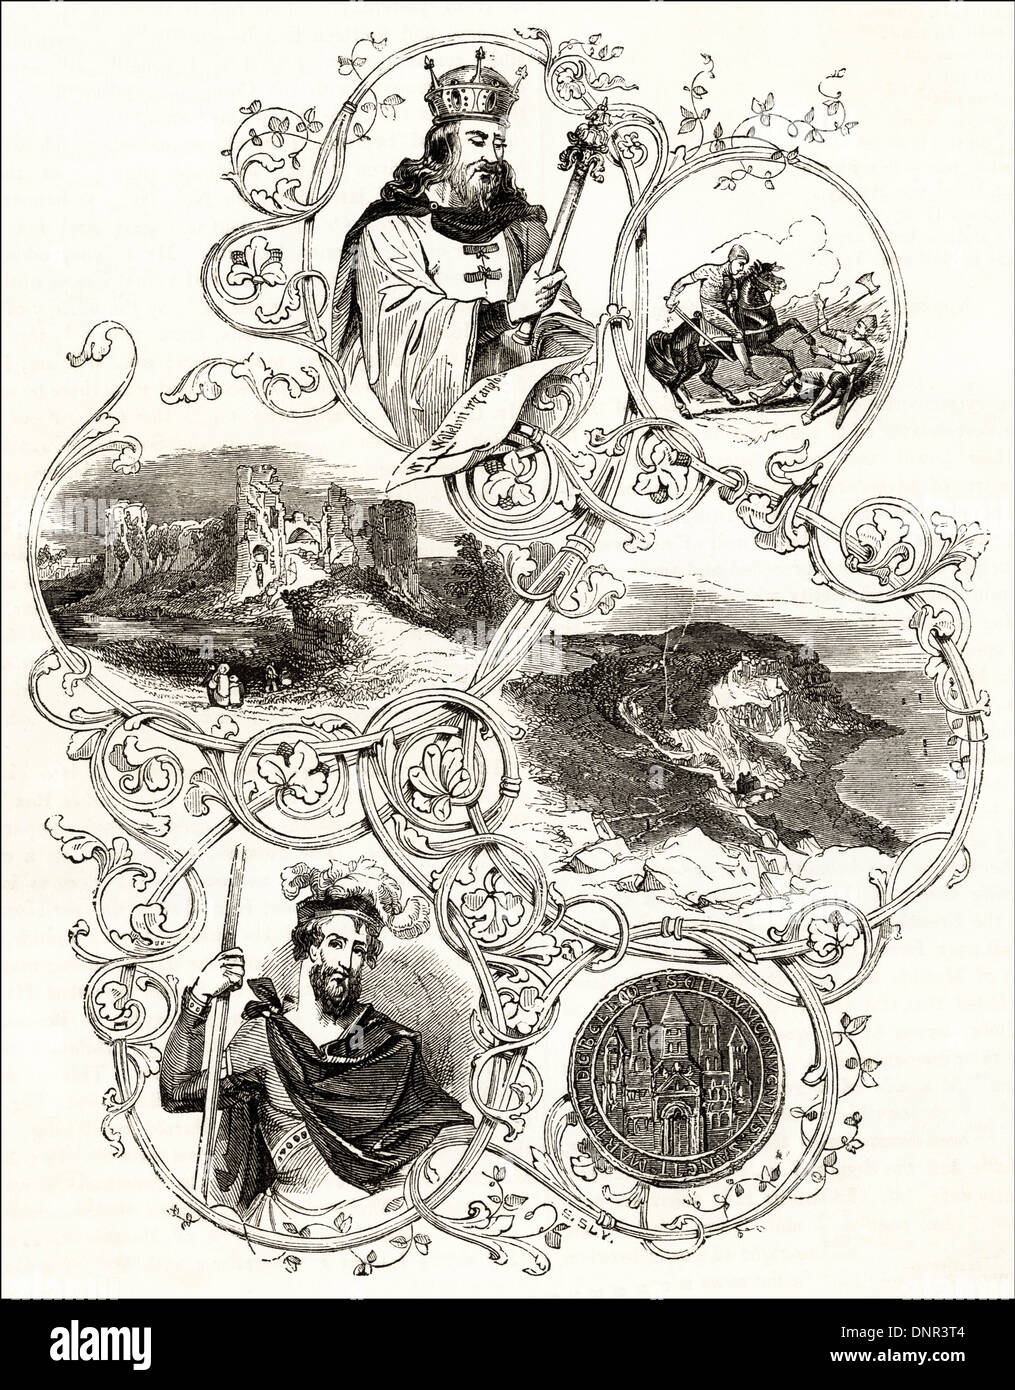 Szenen von der normannischen Eroberung Englands. Viktorianische Holzschnitt ca. 1845. Stockfoto